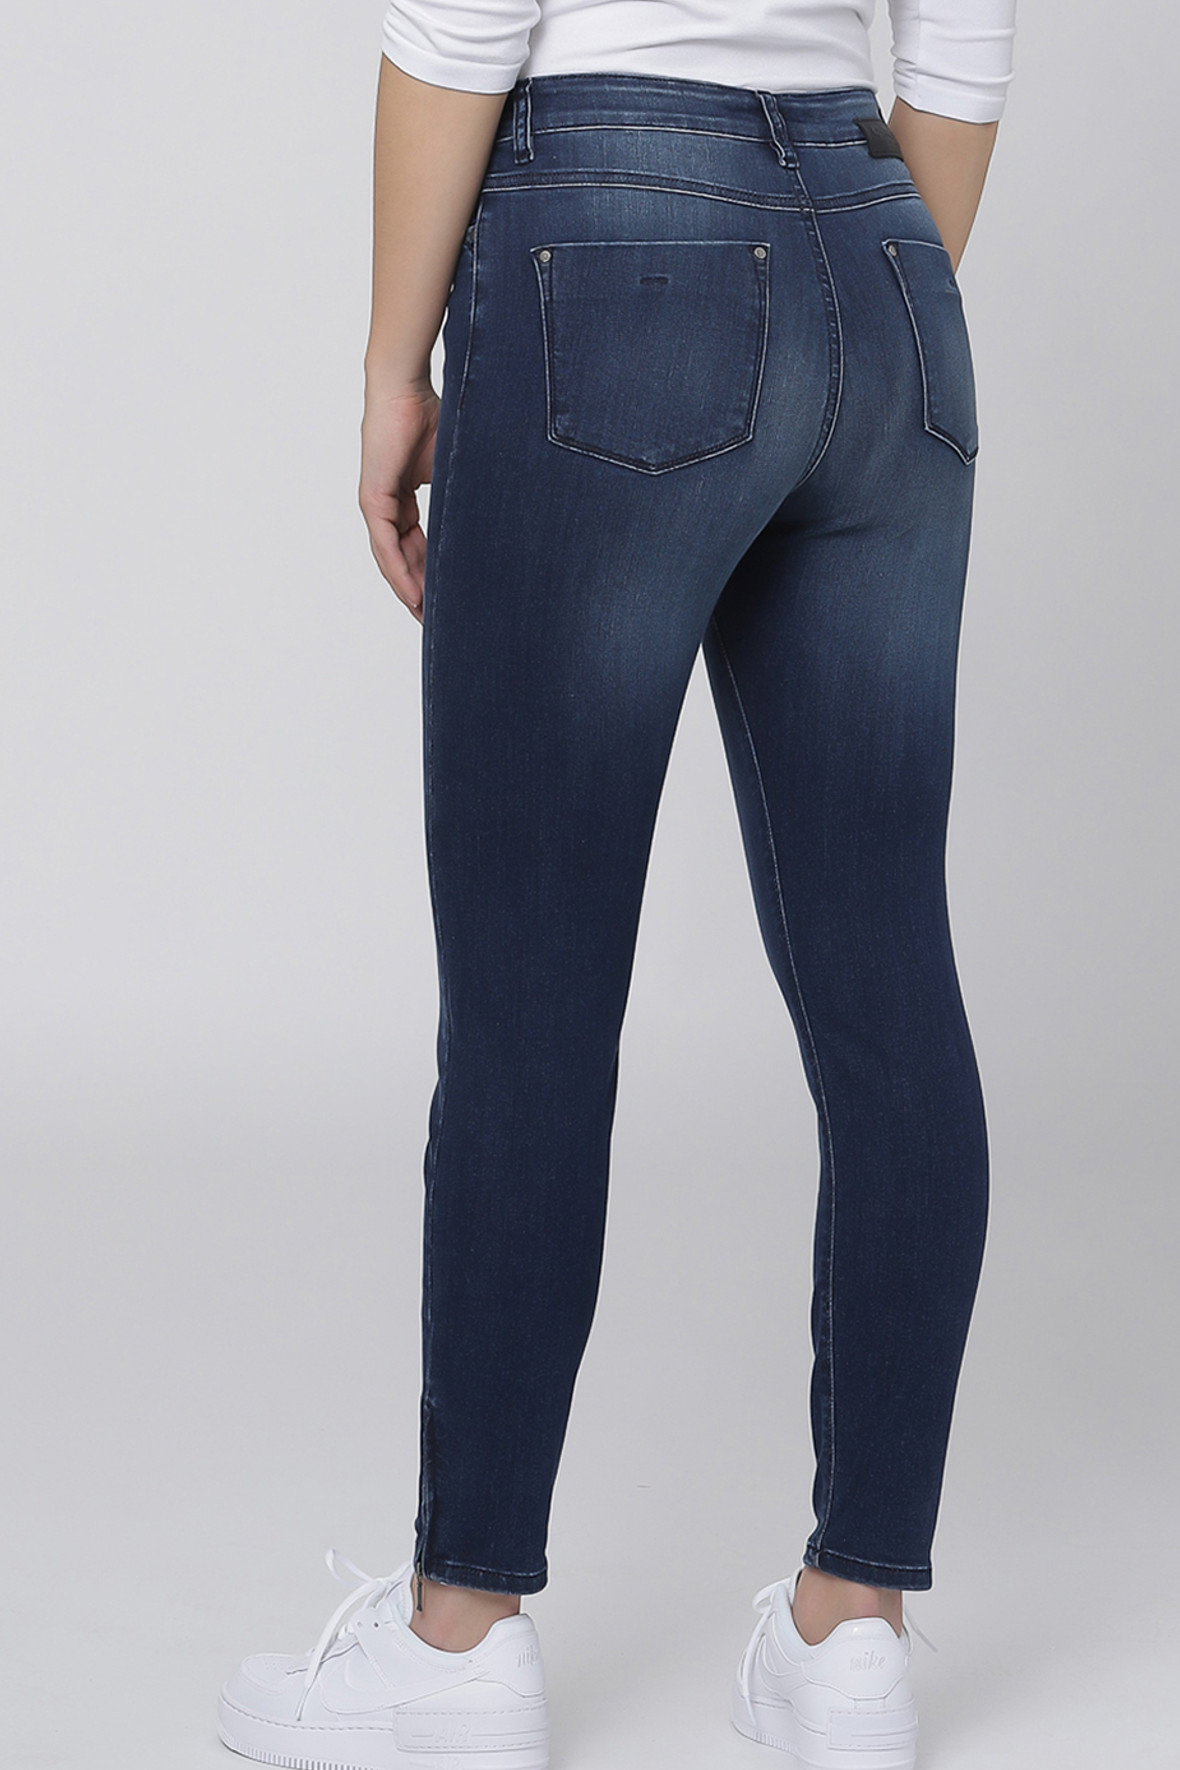 C-Ro Magic Fit Jeans - regular fit - slim fit - denim - dame - Hos Lohse